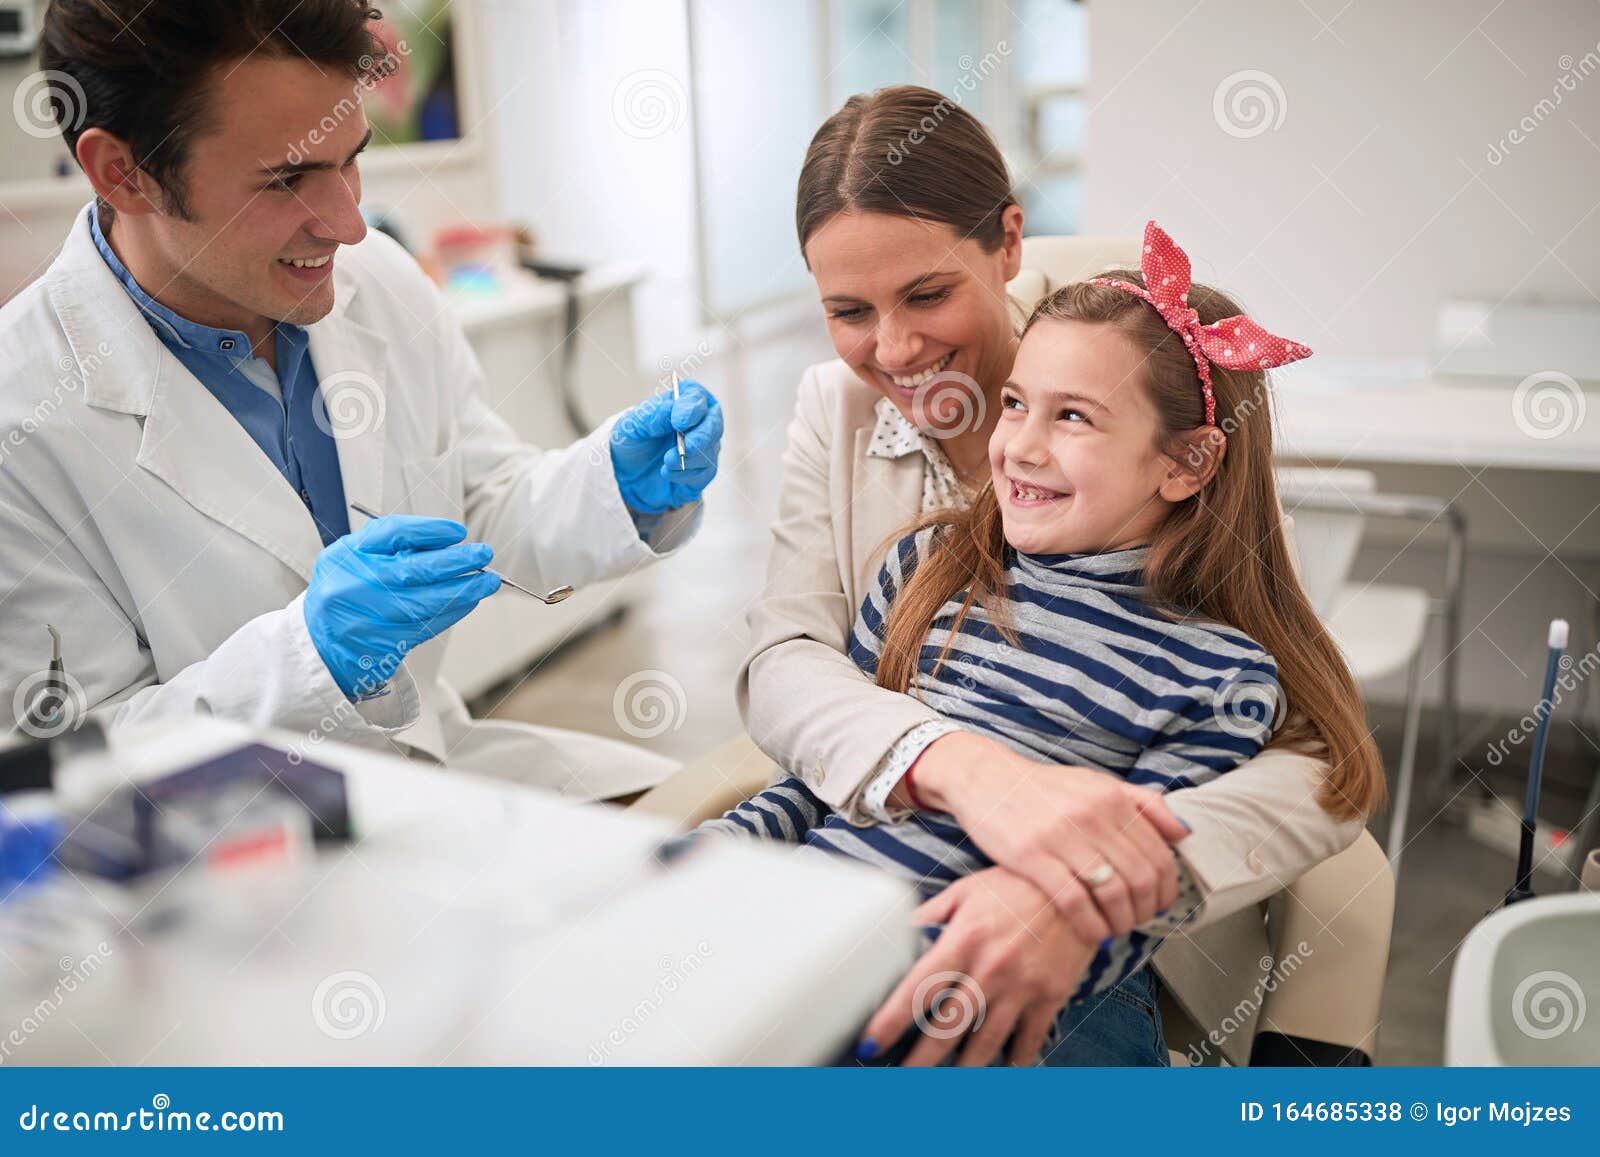 family in dentistÃ¢â¬â¢s office.dentist examining his girl patient in dentistÃ¢â¬â¢s clinic